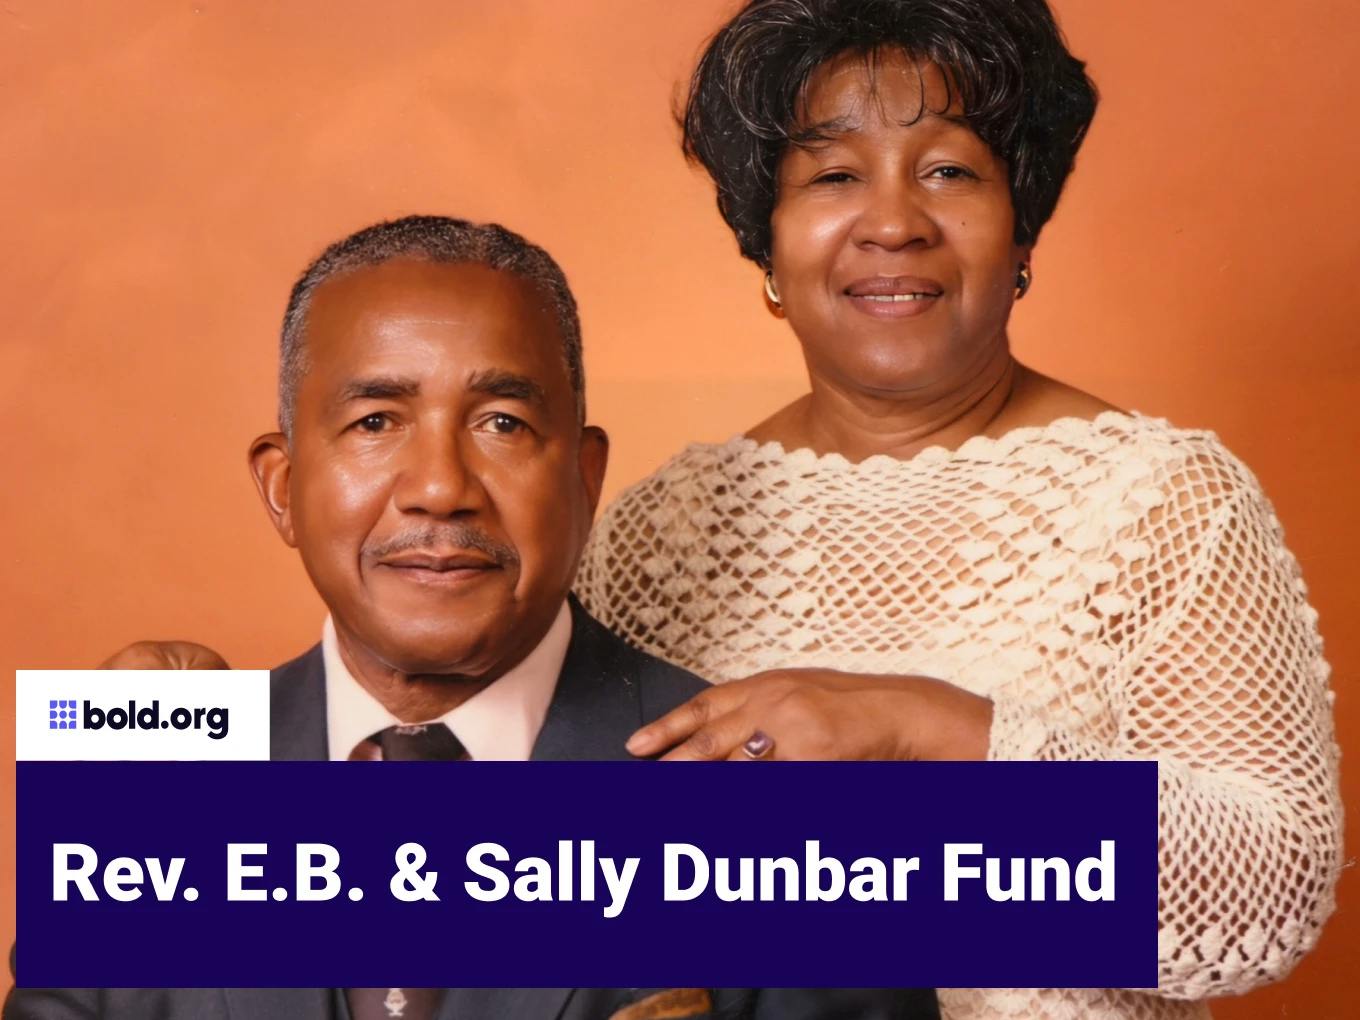 Rev. E.B. & Sally Dunbar Fund